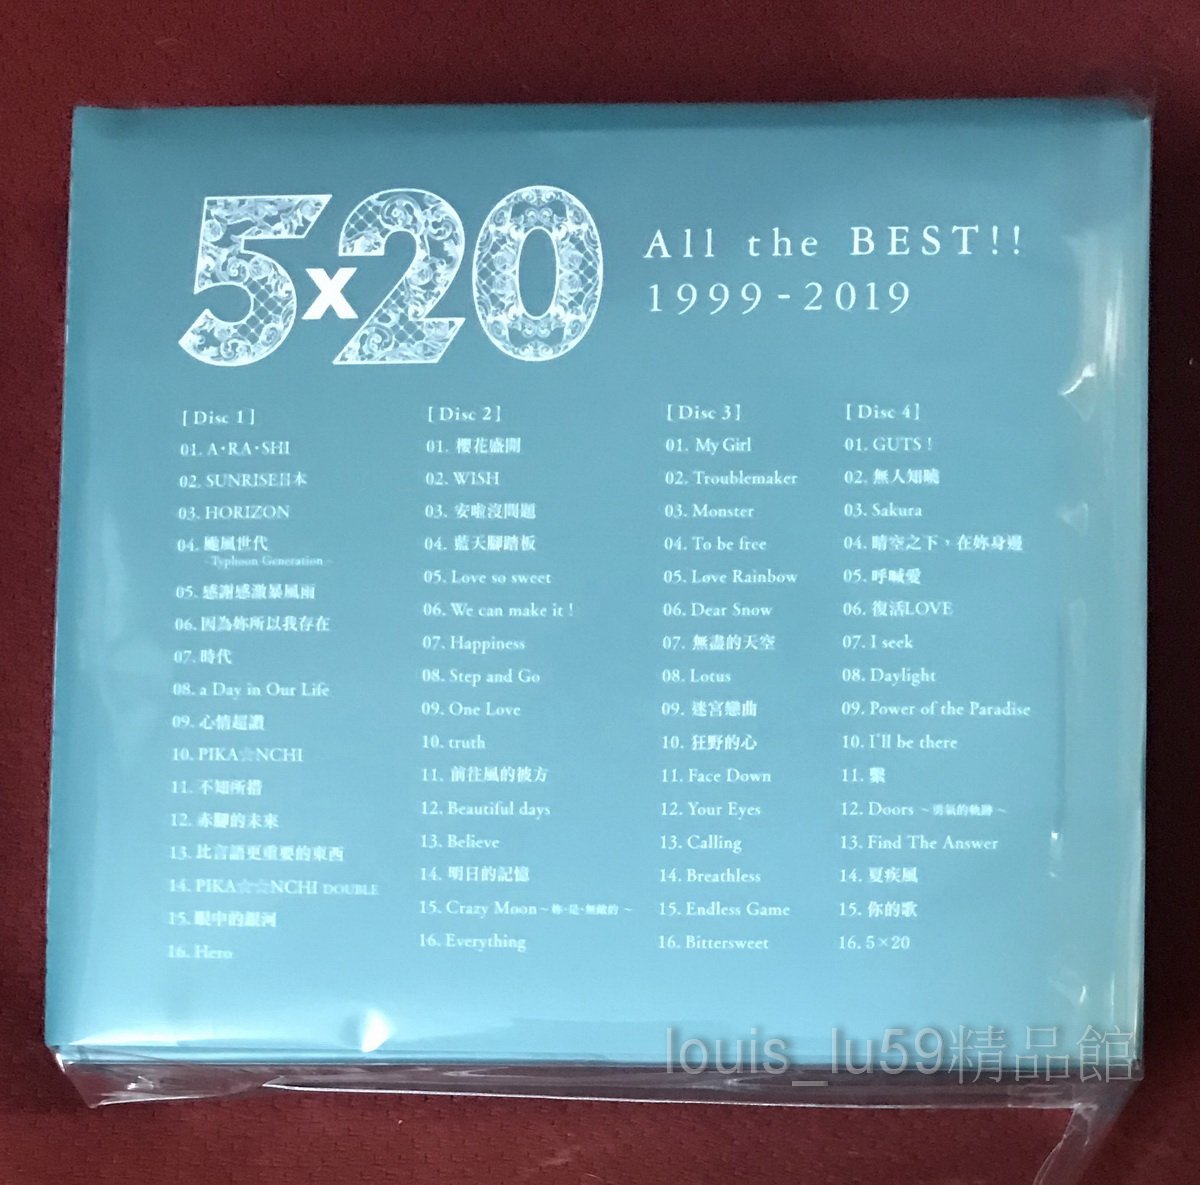 嵐Arashi 5×20 All the BEST 1999-2019【台版4 CD+DVD初回限定盤